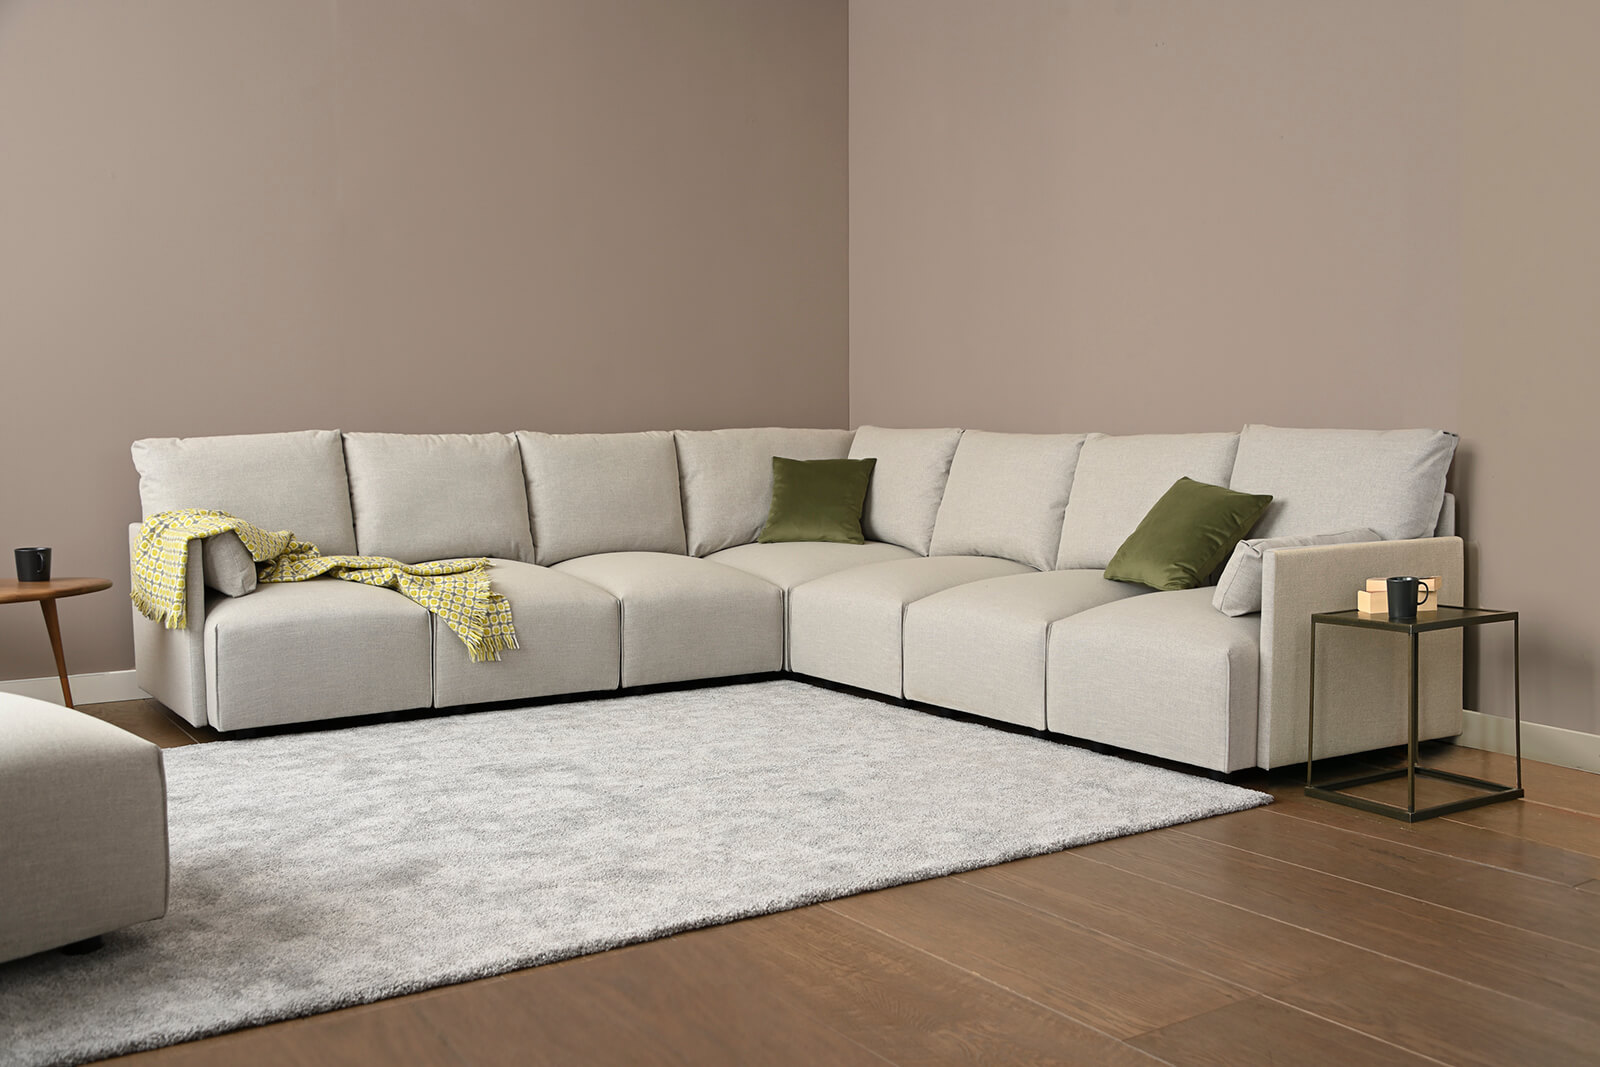 HB04-large-corner-sofa-3q-coconut-4x4-lifestyle